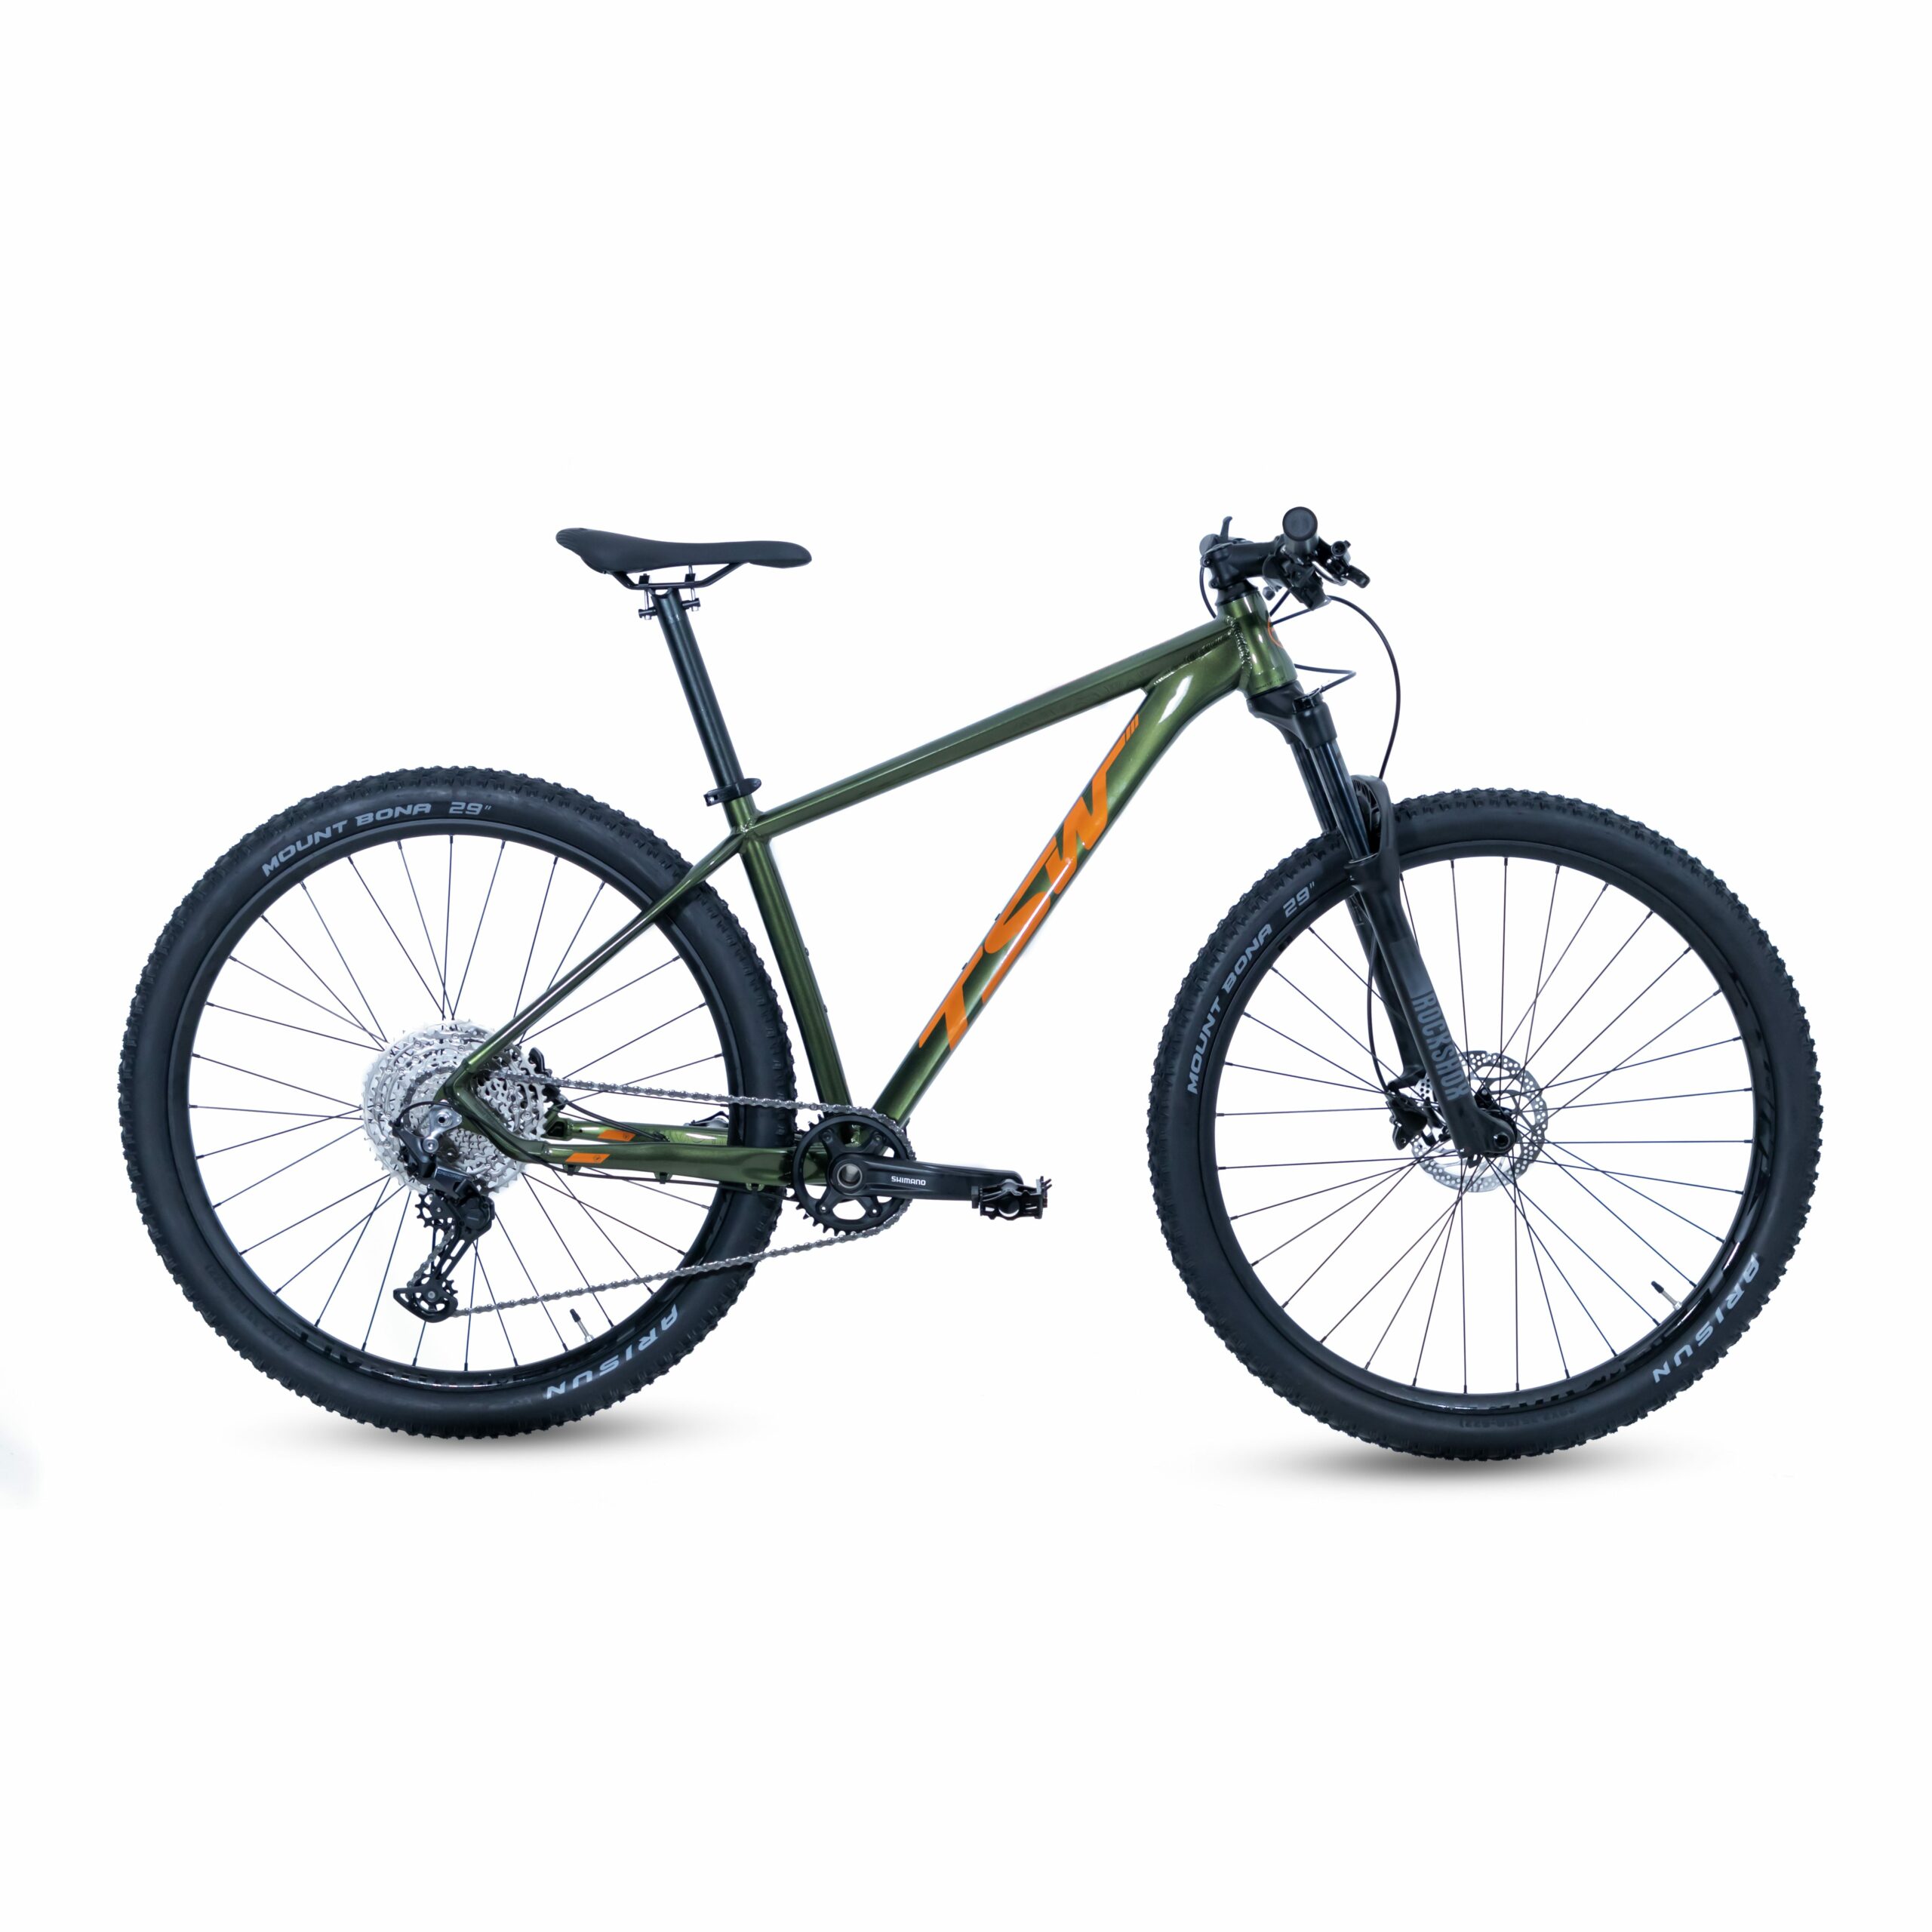 Bicicleta TSW Yukon | SH-12 | 2021/2022 - 15.5", Verde/Laranja